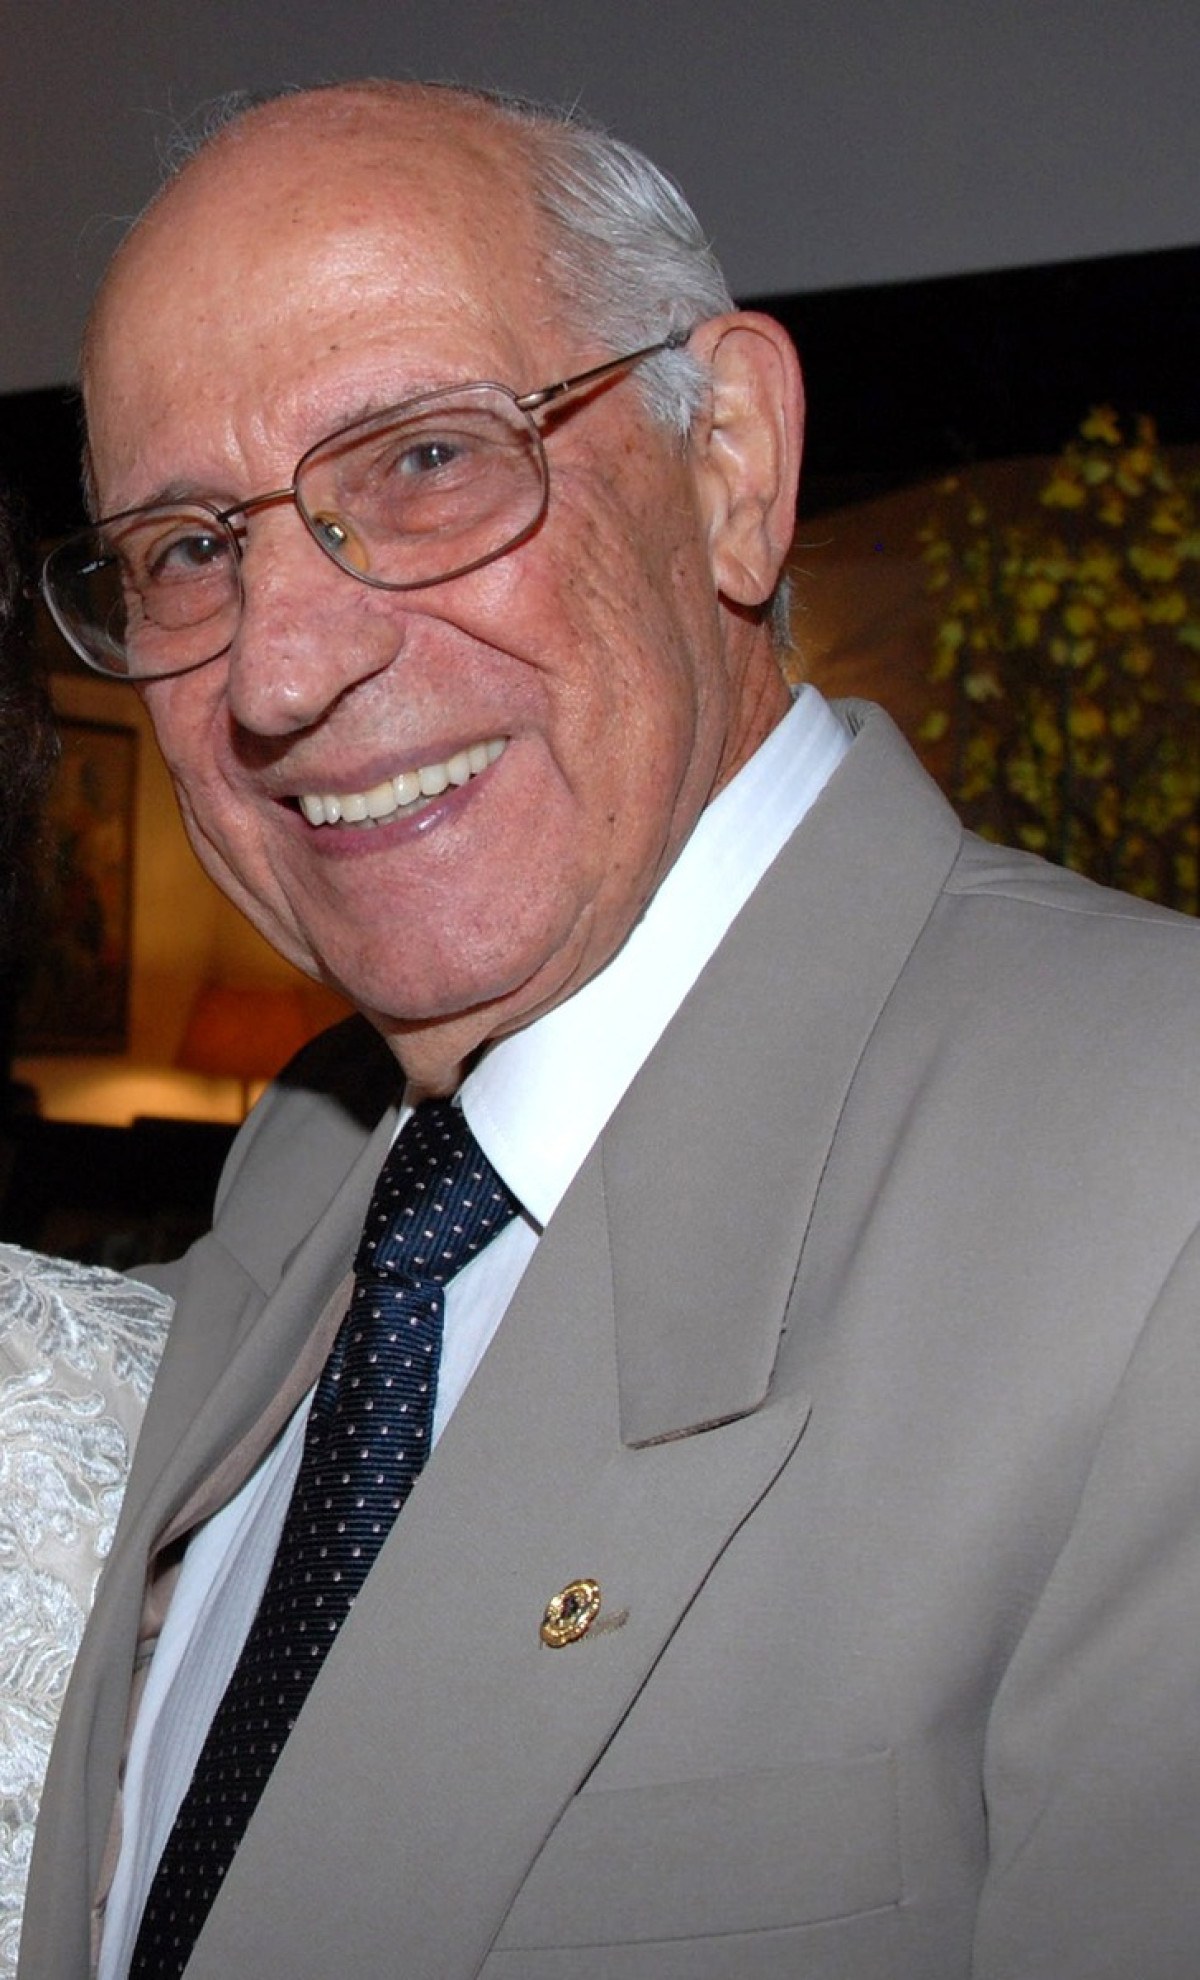 Morre cardiologista pioneiro Ely Toscano, aos 97 anos, em Brasília